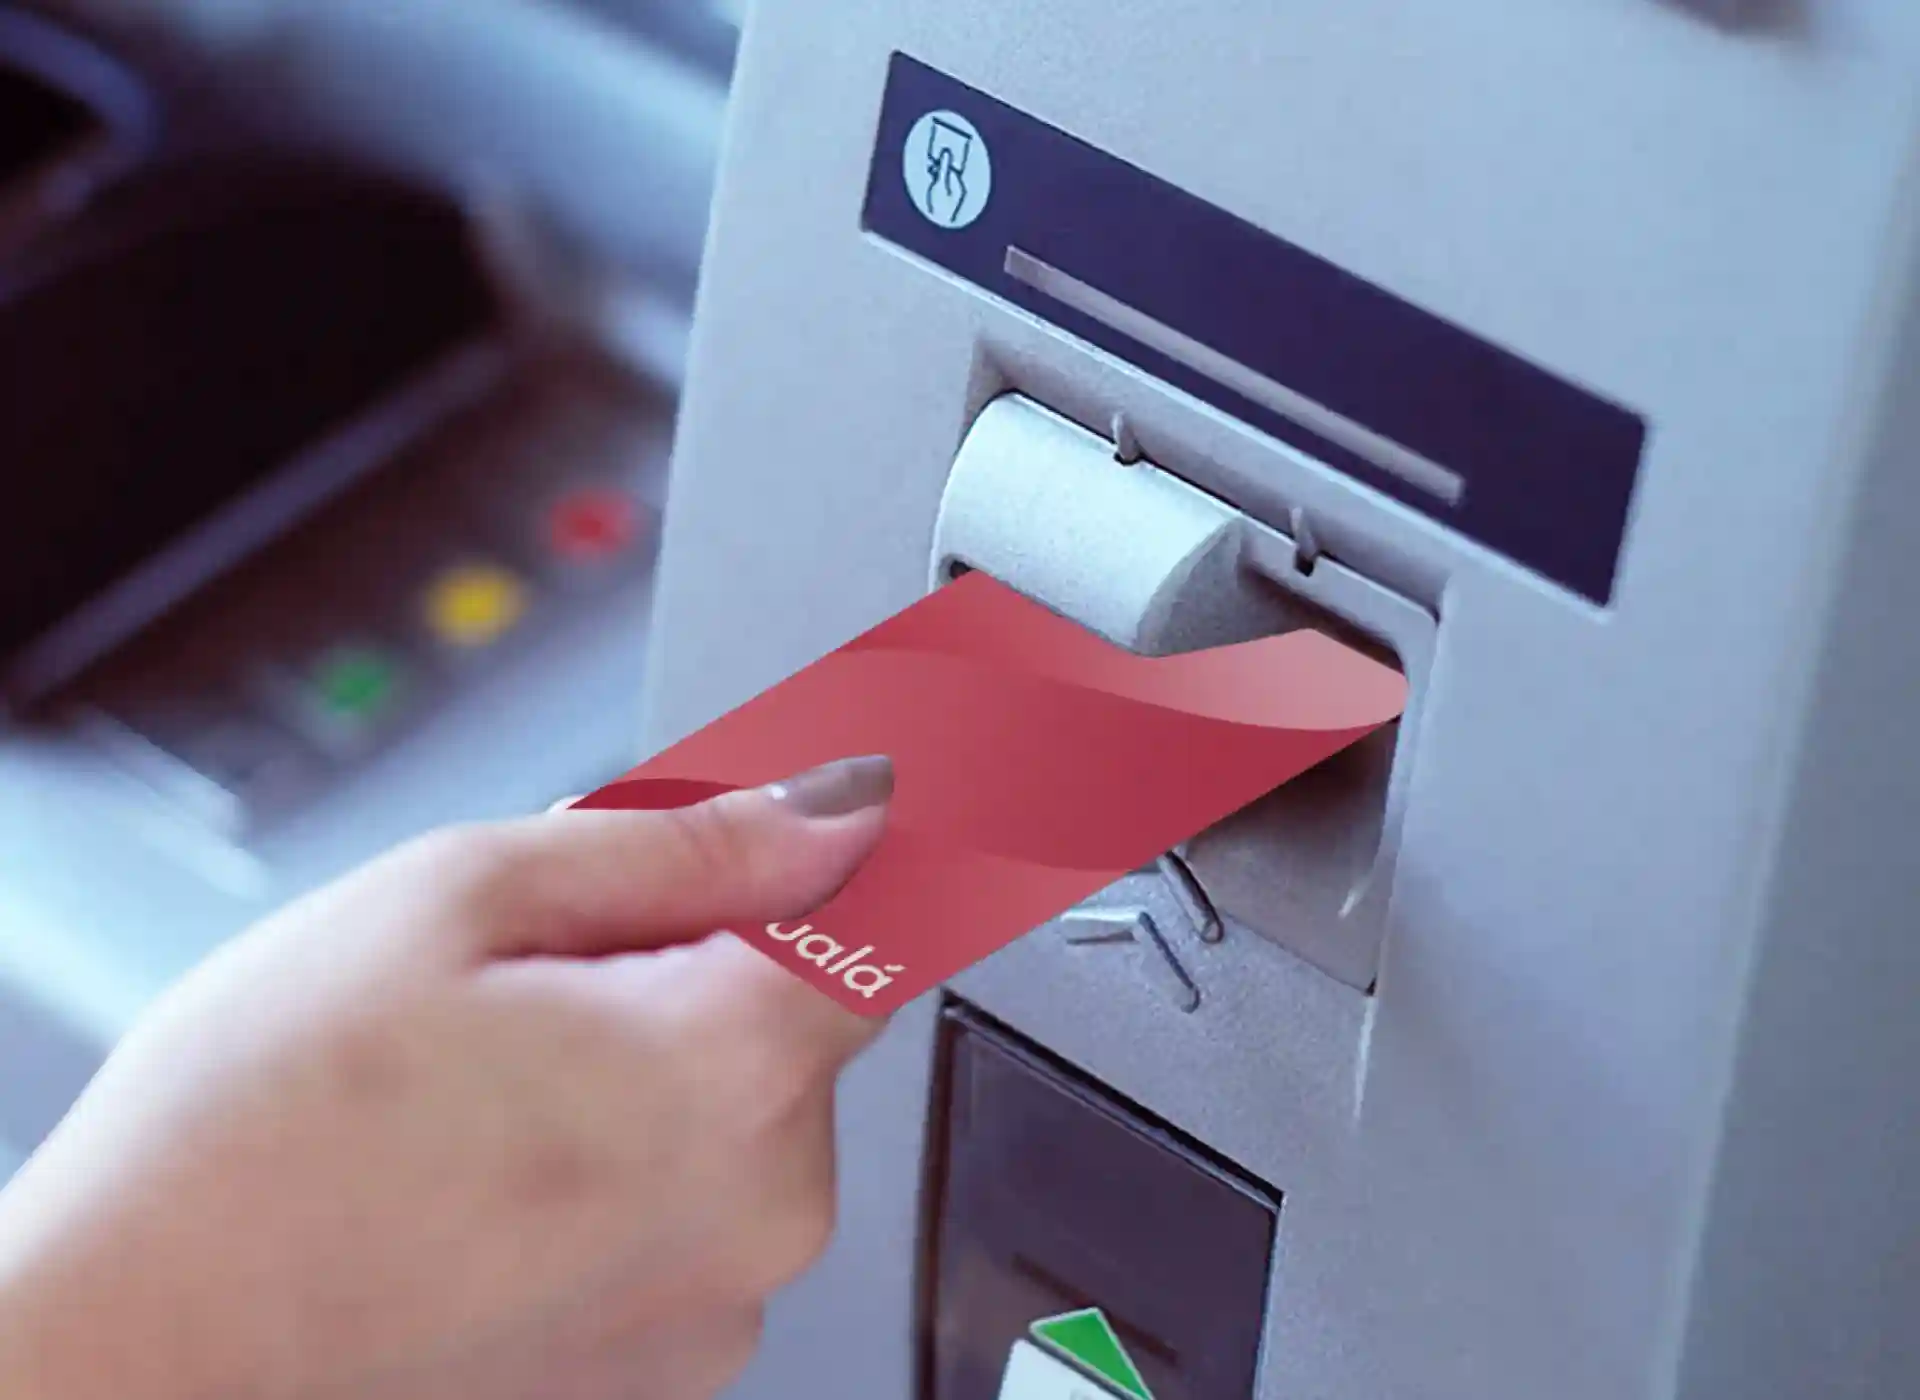 Imagen de una persona retirando efectivo del cajero automático con la tarjeta Ualá.